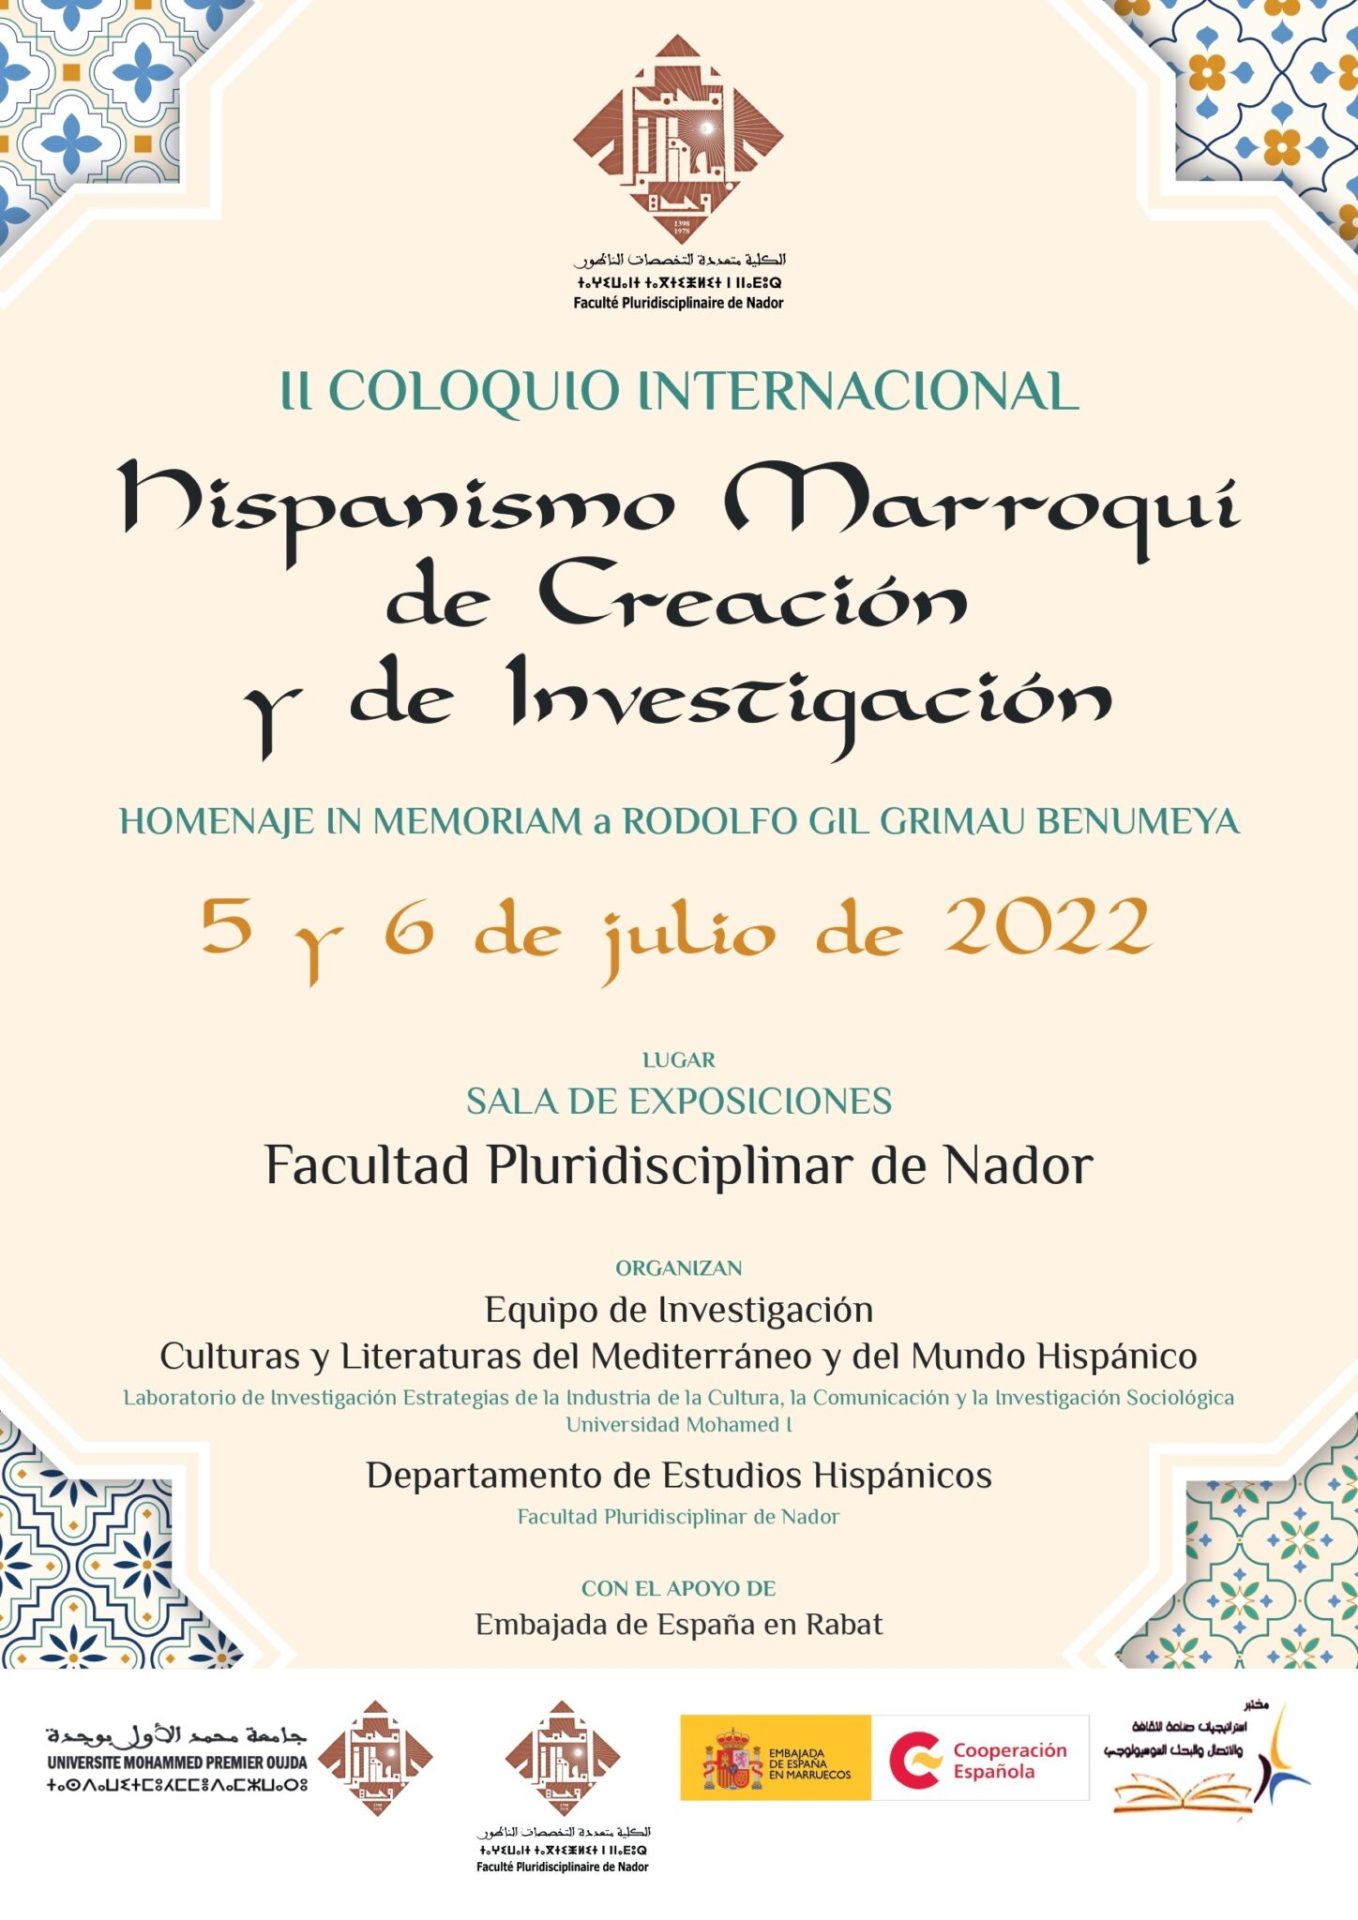 II COLOQUIO INTERNACIONAL HISPANISMO MARROQUÍ DE CREACIÓN Y DE INVESTIGACIÓN